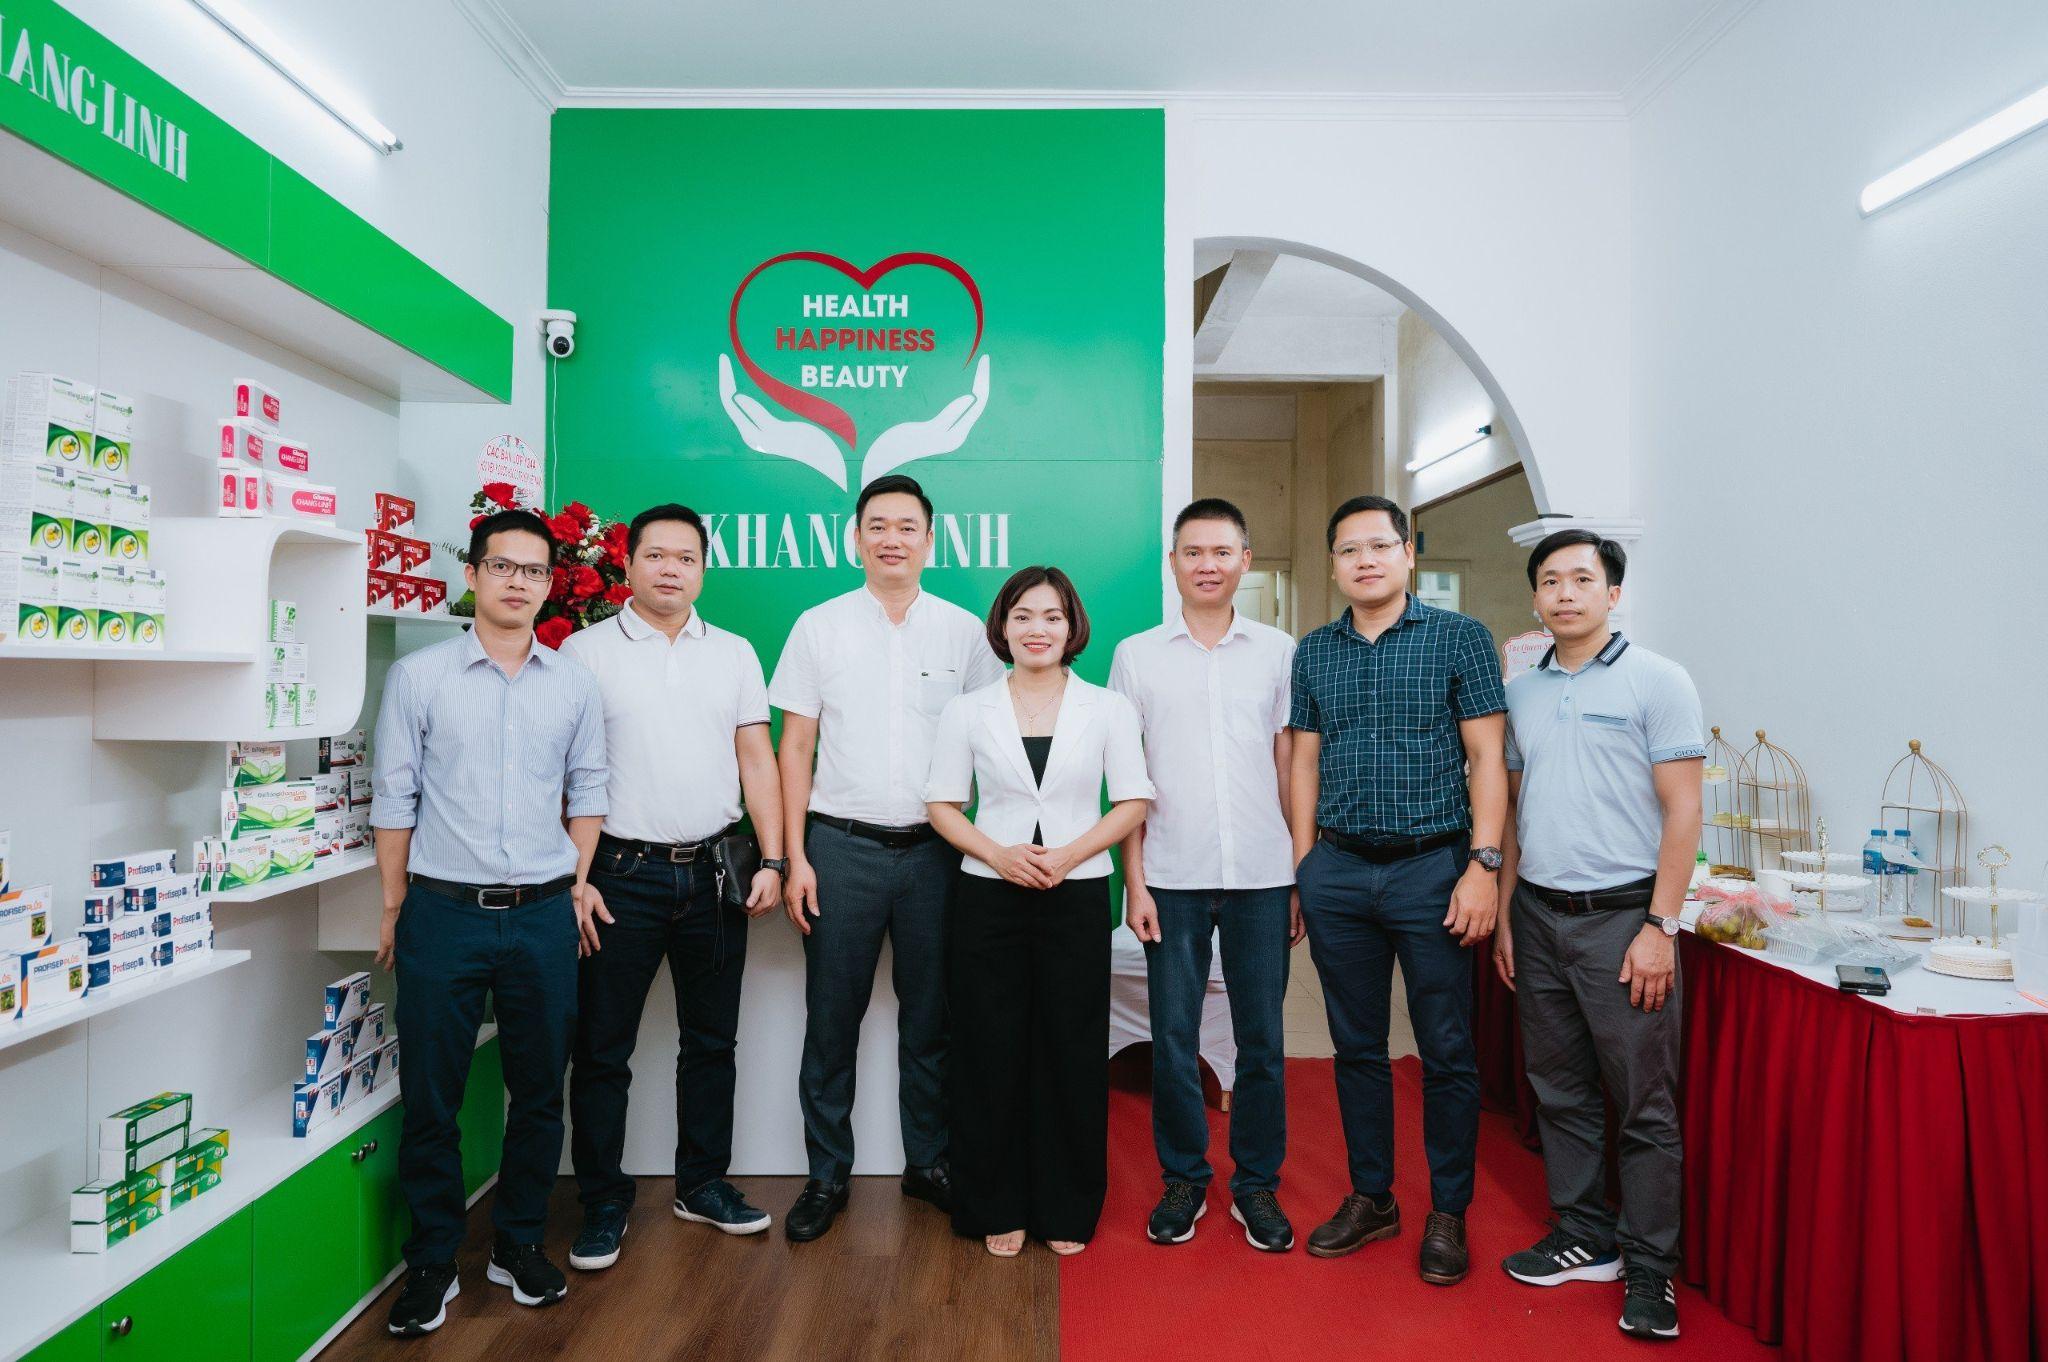 Khang Linh Group khai trương showroom thực phẩm bảo vệ sức khỏe kế thừa tinh hoa y học cổ truyền - 4